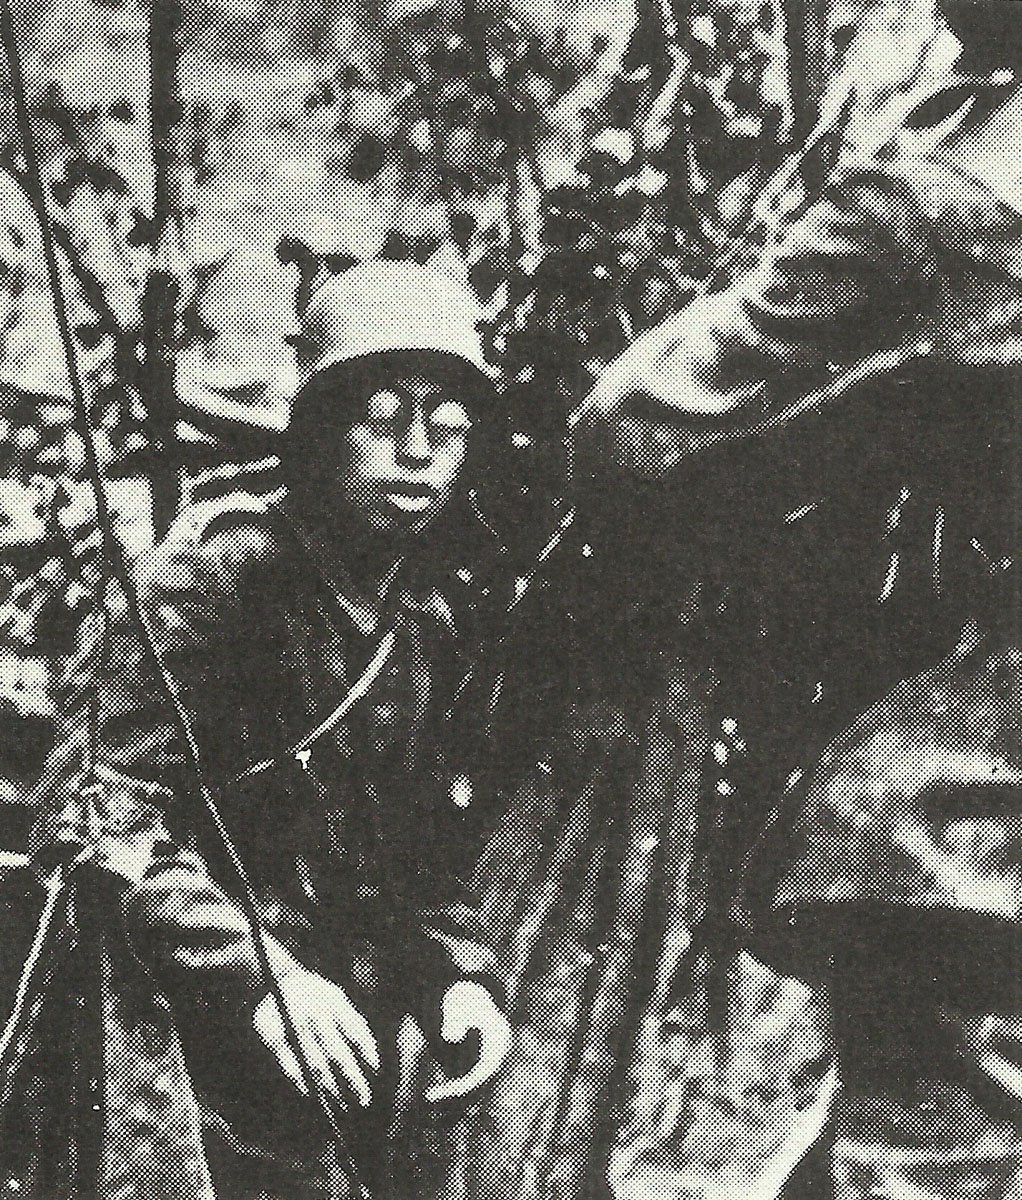 Bespectacled German soldier surrenders